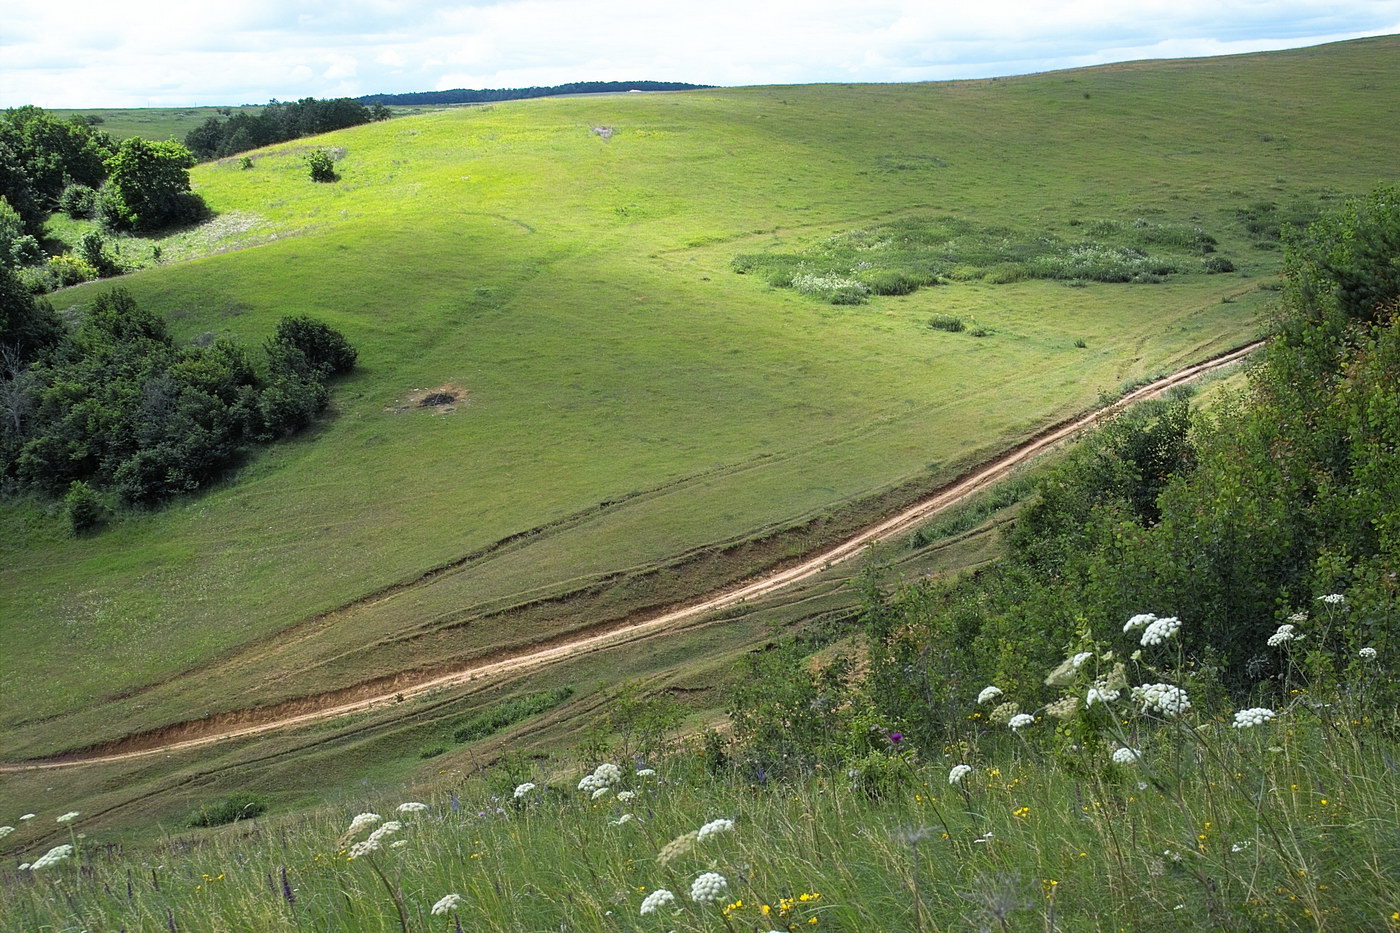 Тенишево, image of landscape/habitat.